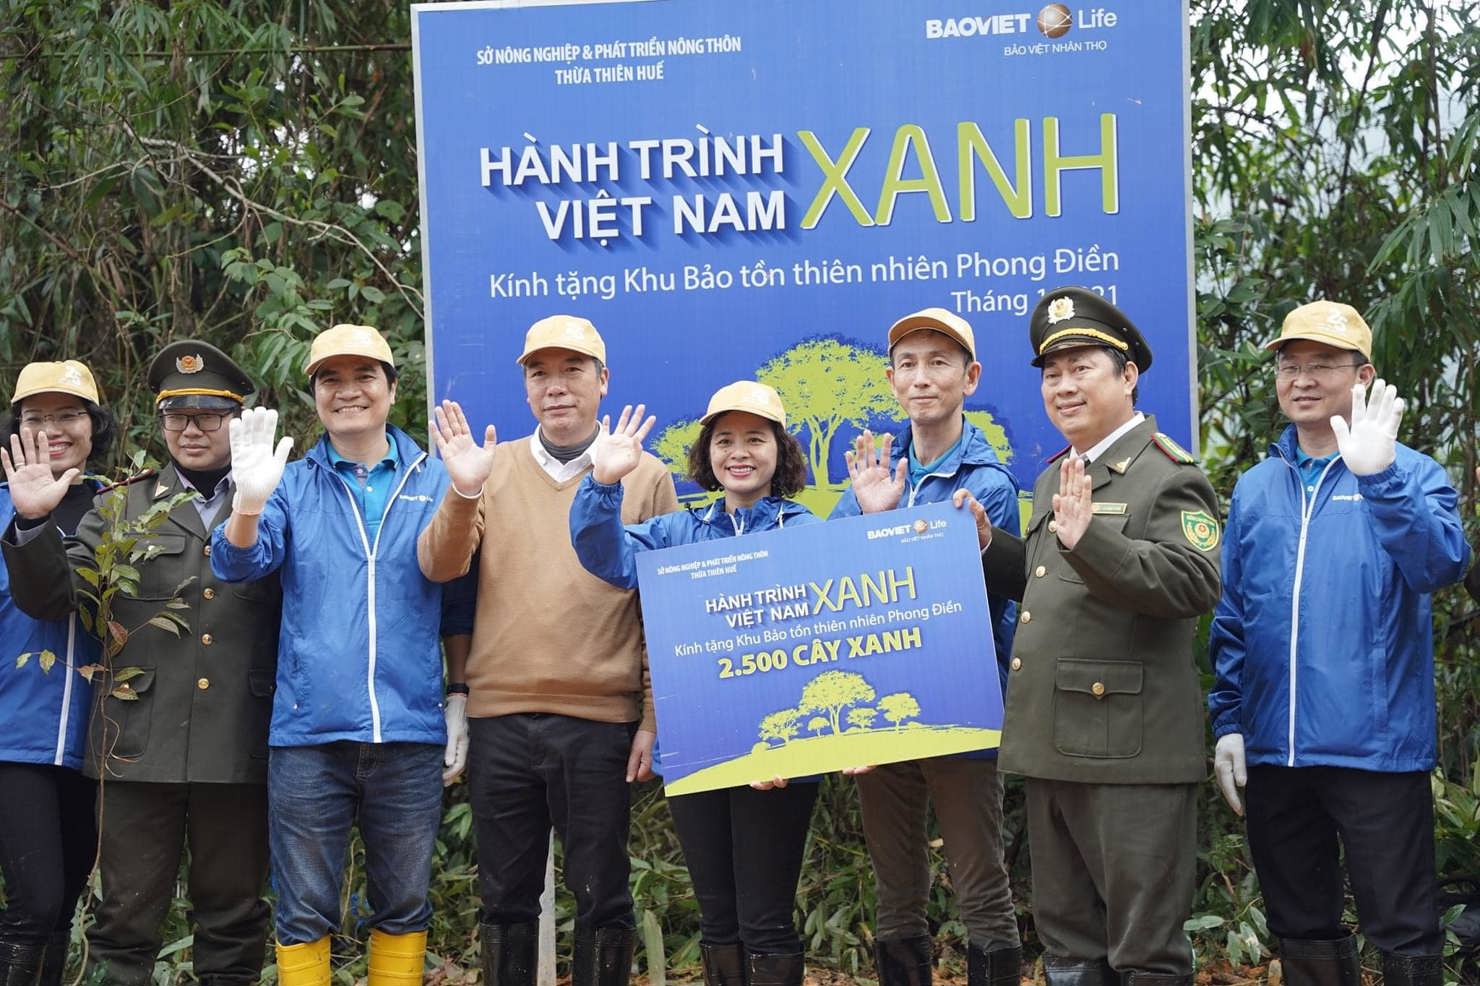 Bảo Việt Nhân thọ khởi động chiến dich trồng 2.500 cây gỗ bản địa đầu tiên trên 5ha đất tại Khu bảo tồn thiên nhiên Phong Điền.